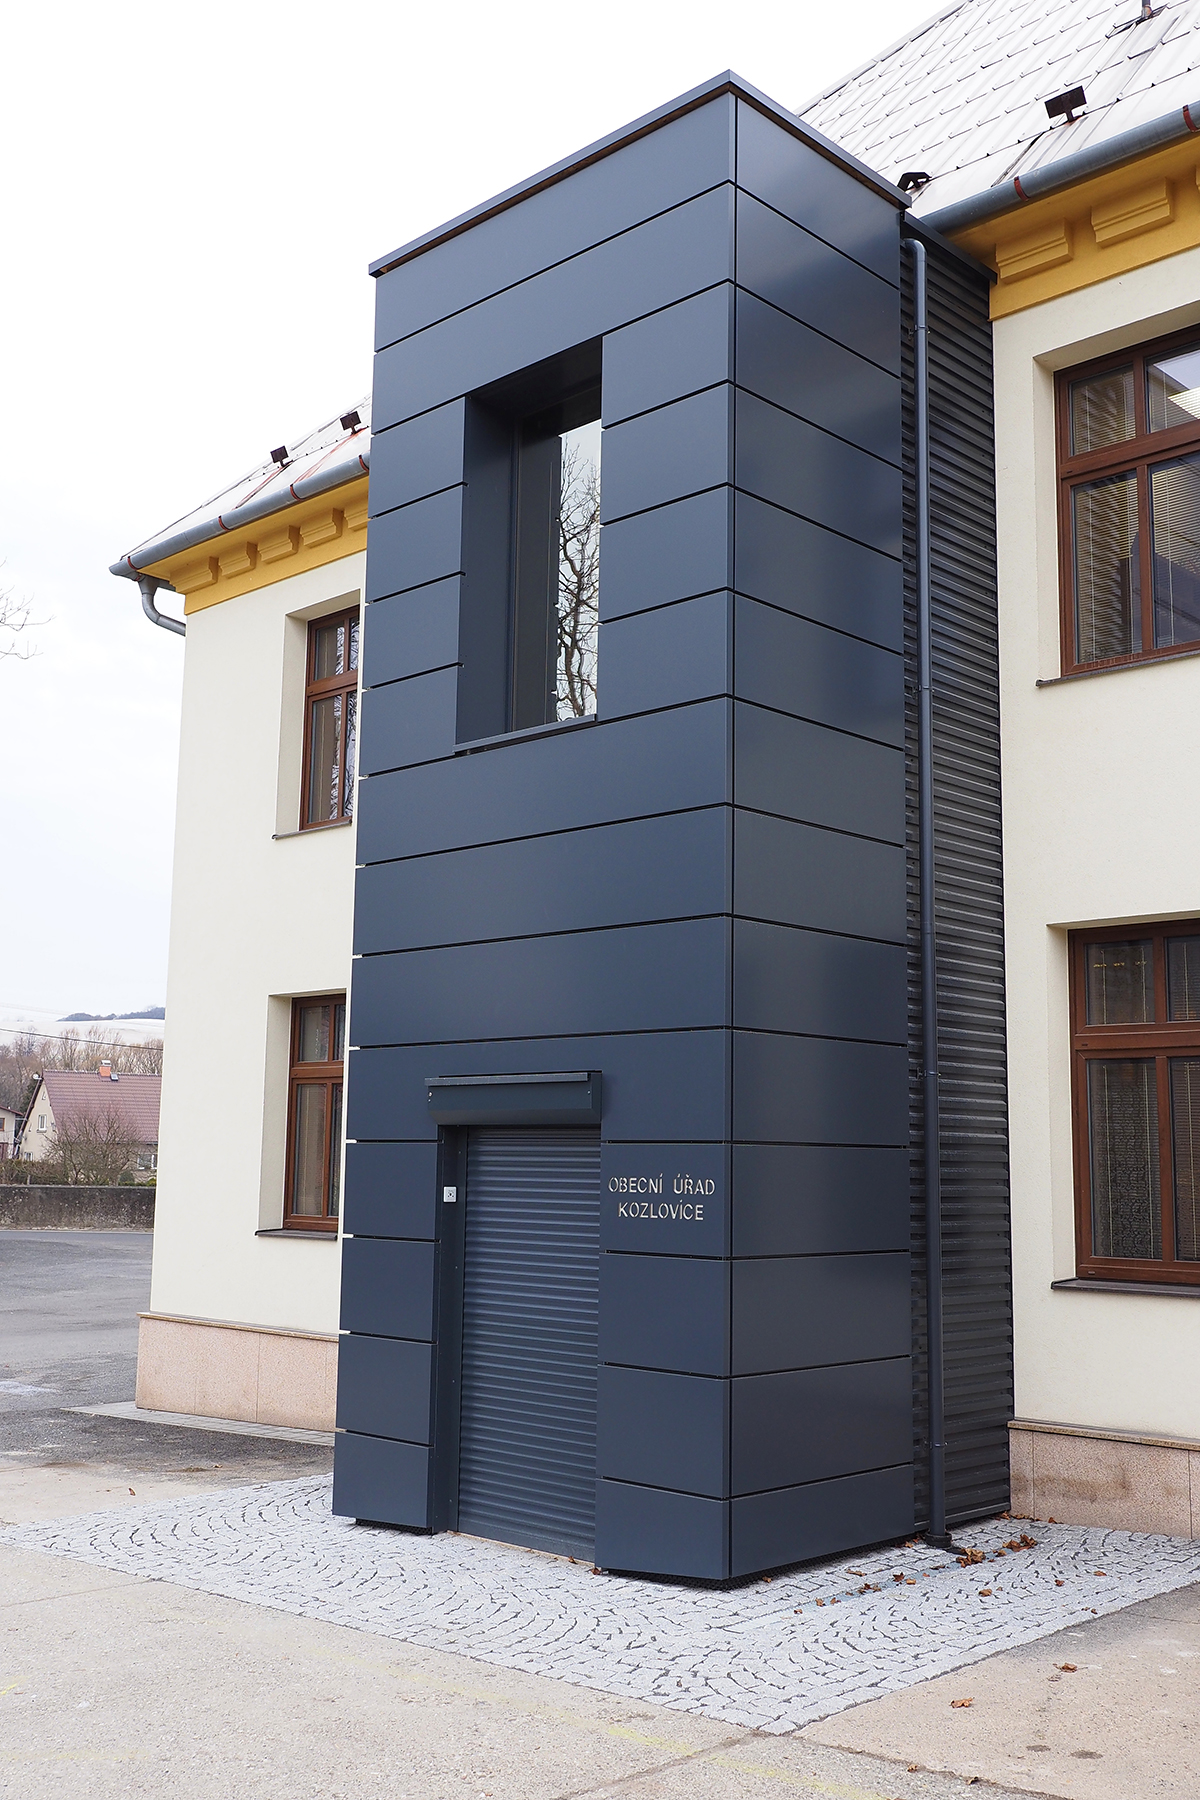 Lanový výtah bez strojovny LC maxi přístavba vně budovy obecní úřad Kozlovice LiftComponents 1